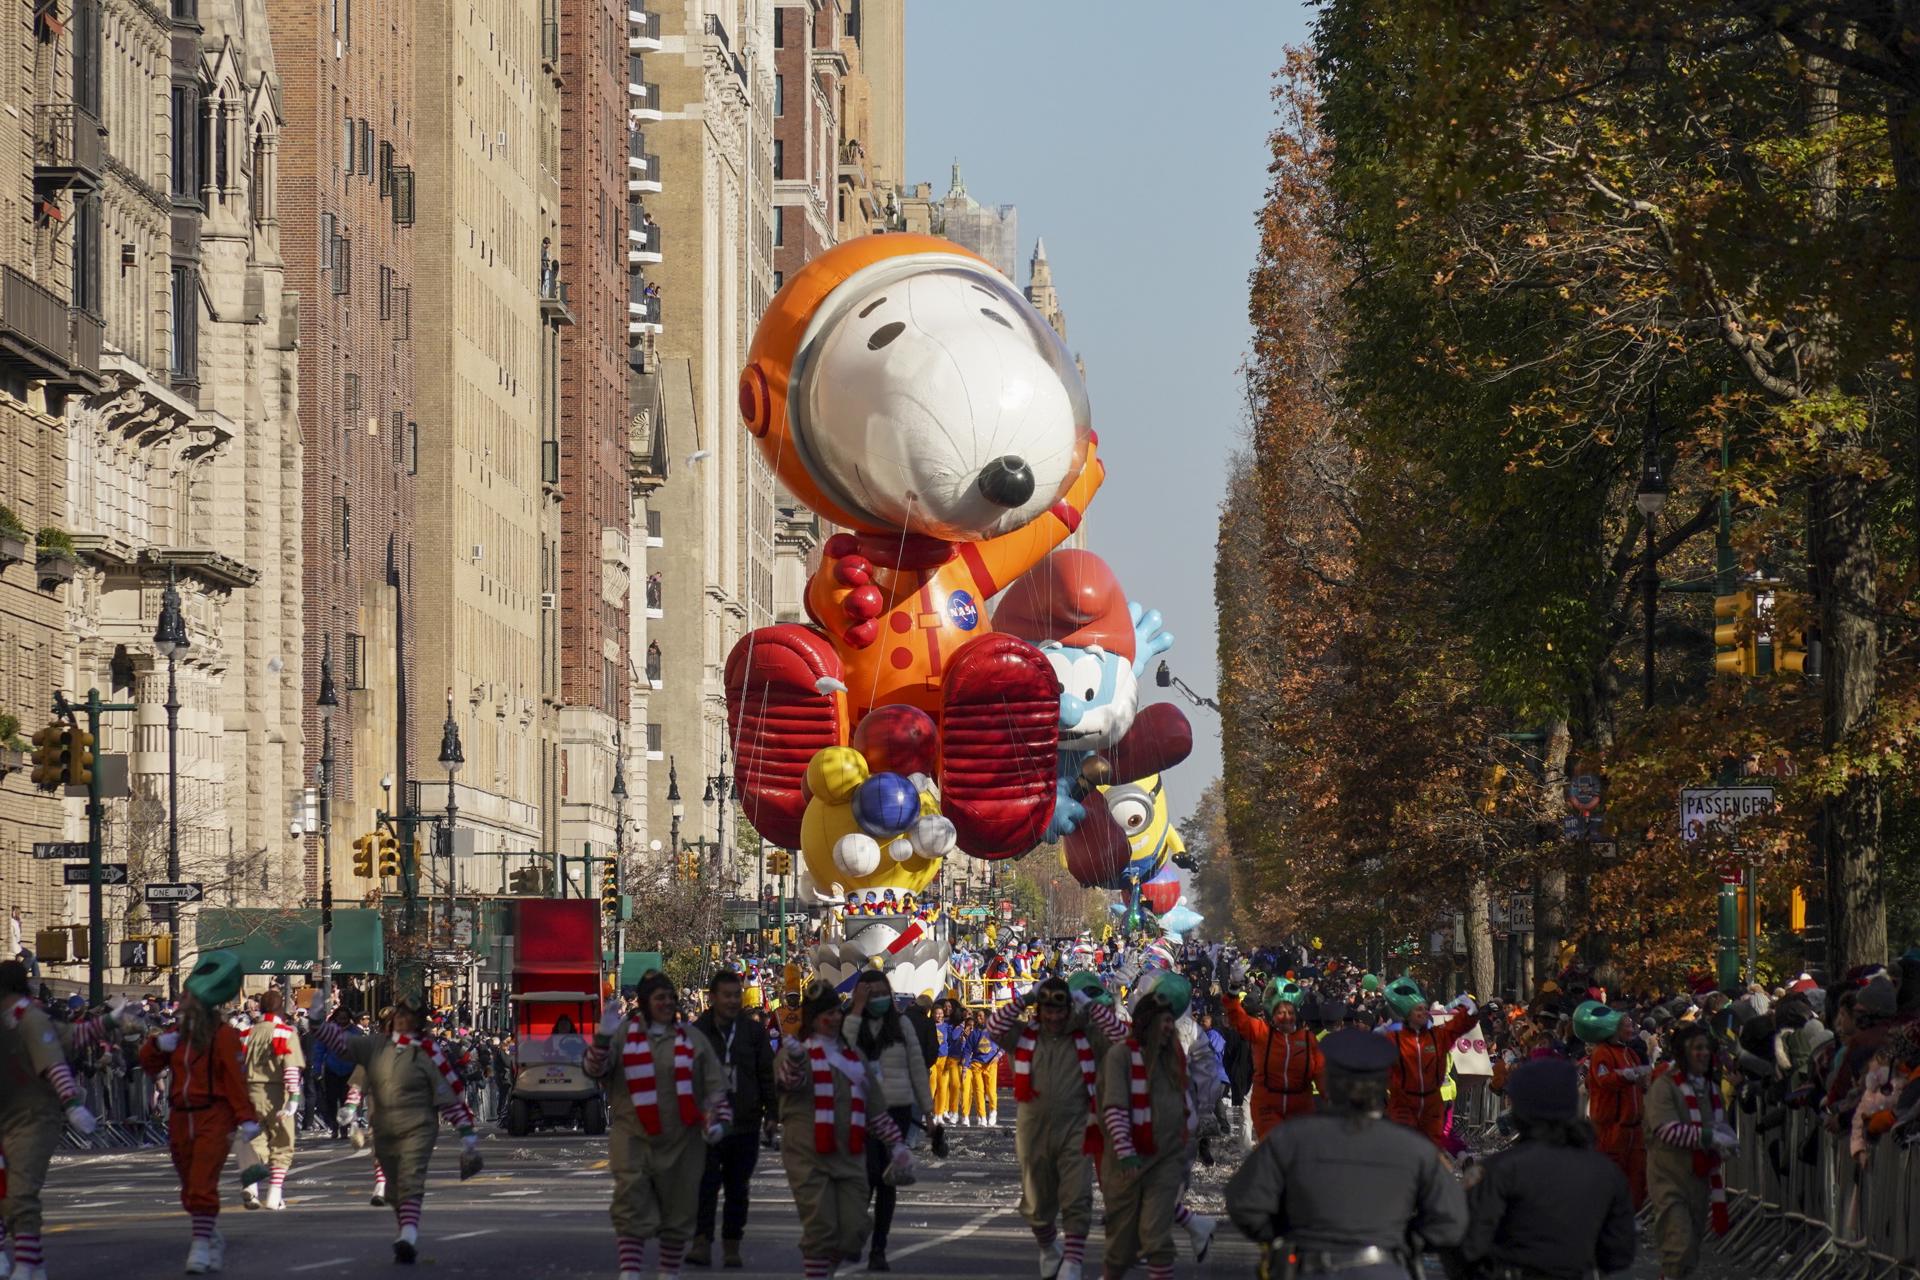 Un gran globo del personaje Snoopy astronauta fue regisrado este jueves, 24 de noviembre, durante la versión 96 del tradicional desfile de las tiendas Macy's por el día de Acción de Gracias, en Nueva York (NY, EE.UU.). EFE/Porter Binks